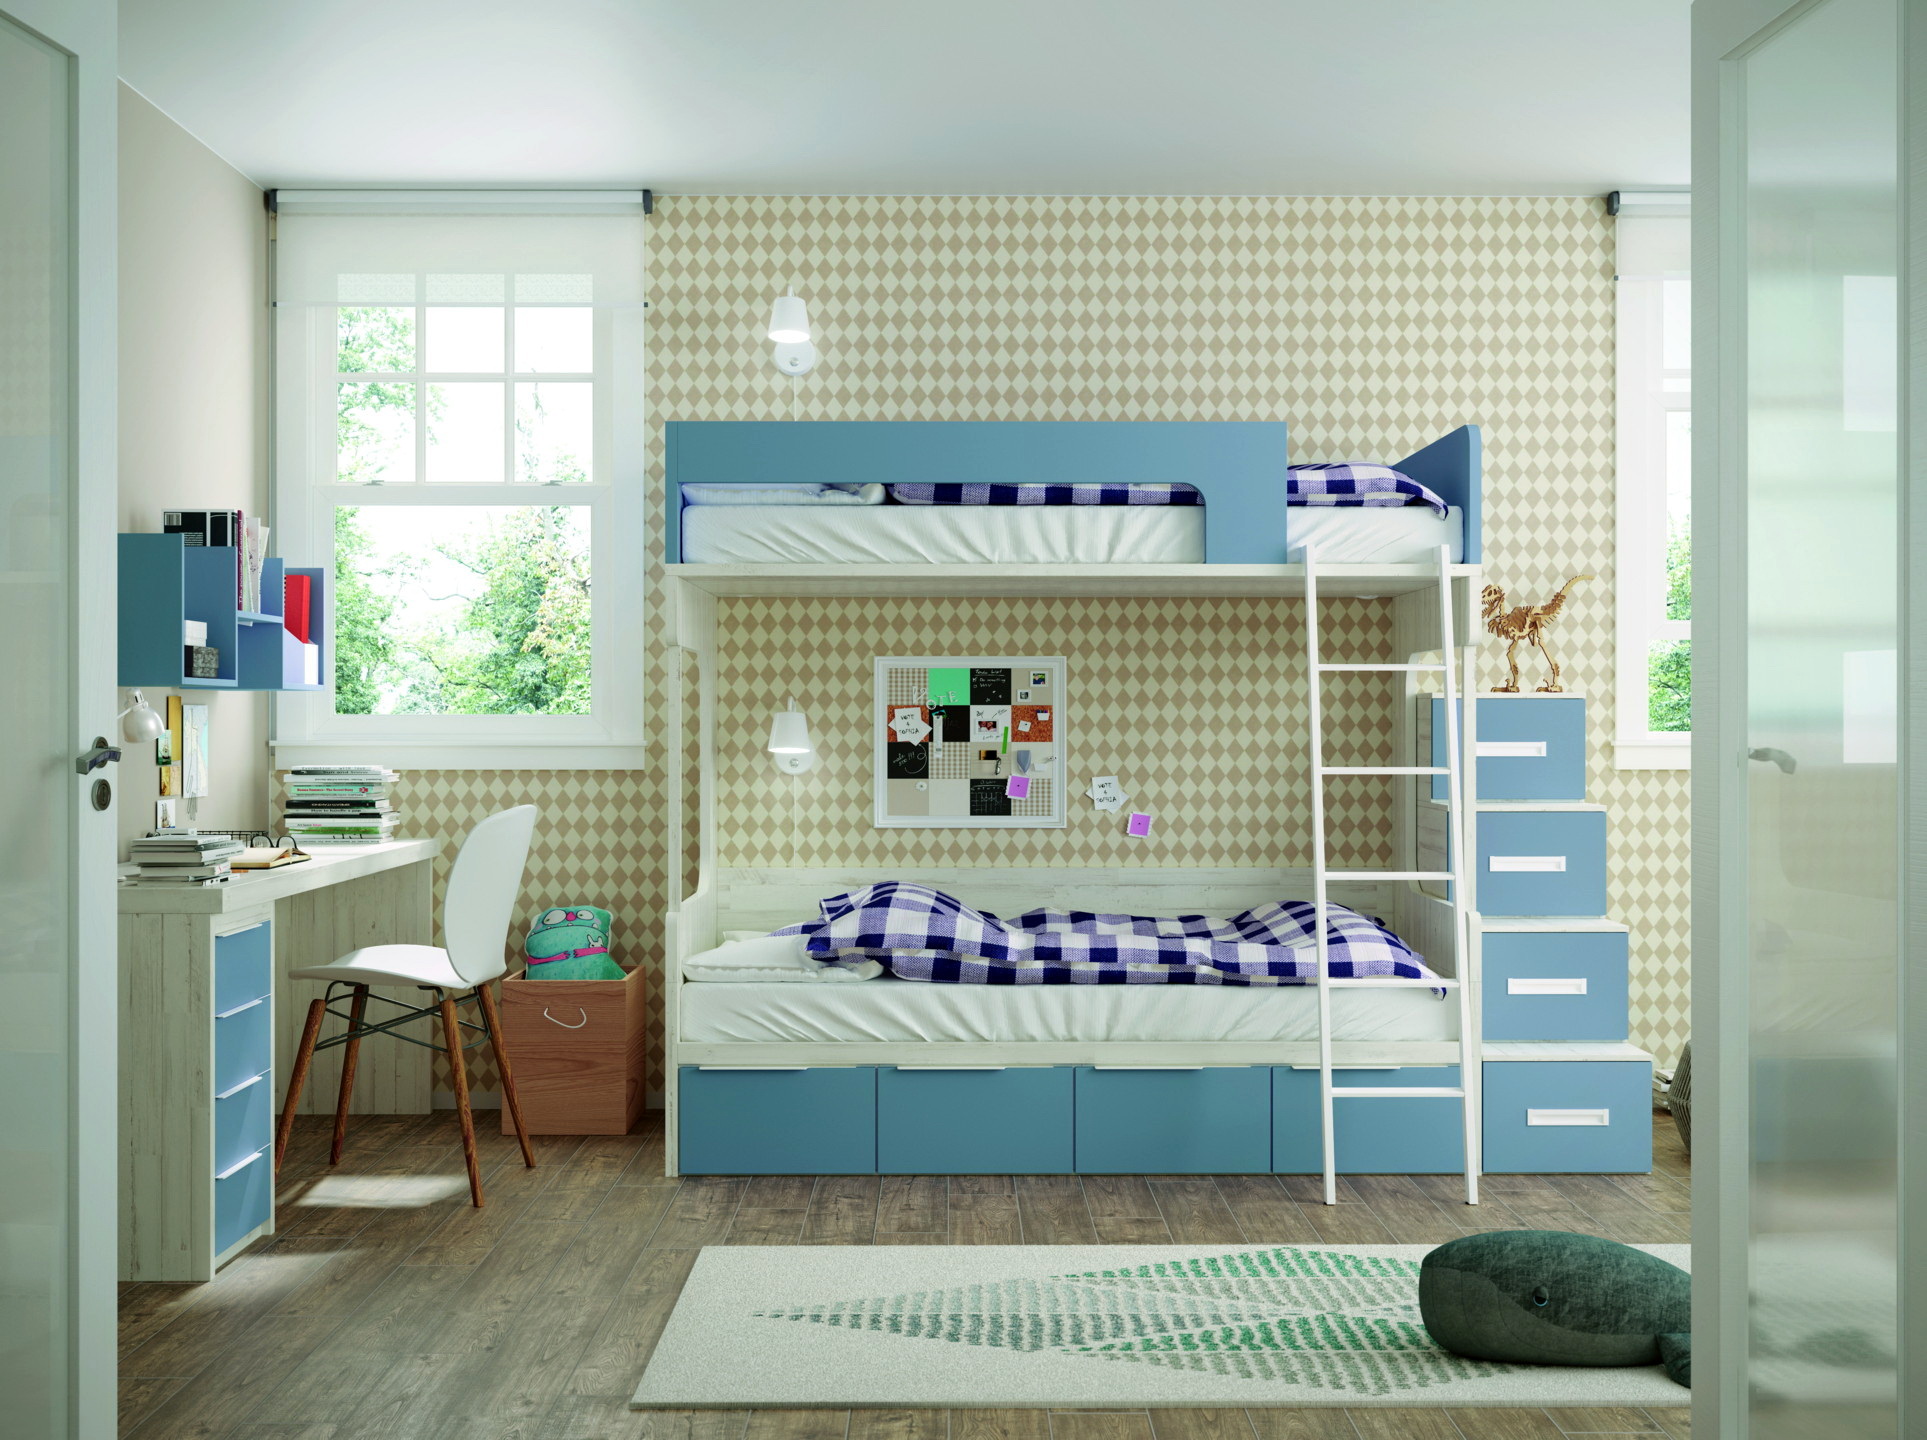 NEW AVANT3 dormitorios infantiles by Yaboni 086 CAMA LITERA POLAR Y TALCO de venta en Muebles ANTOÑÁN León